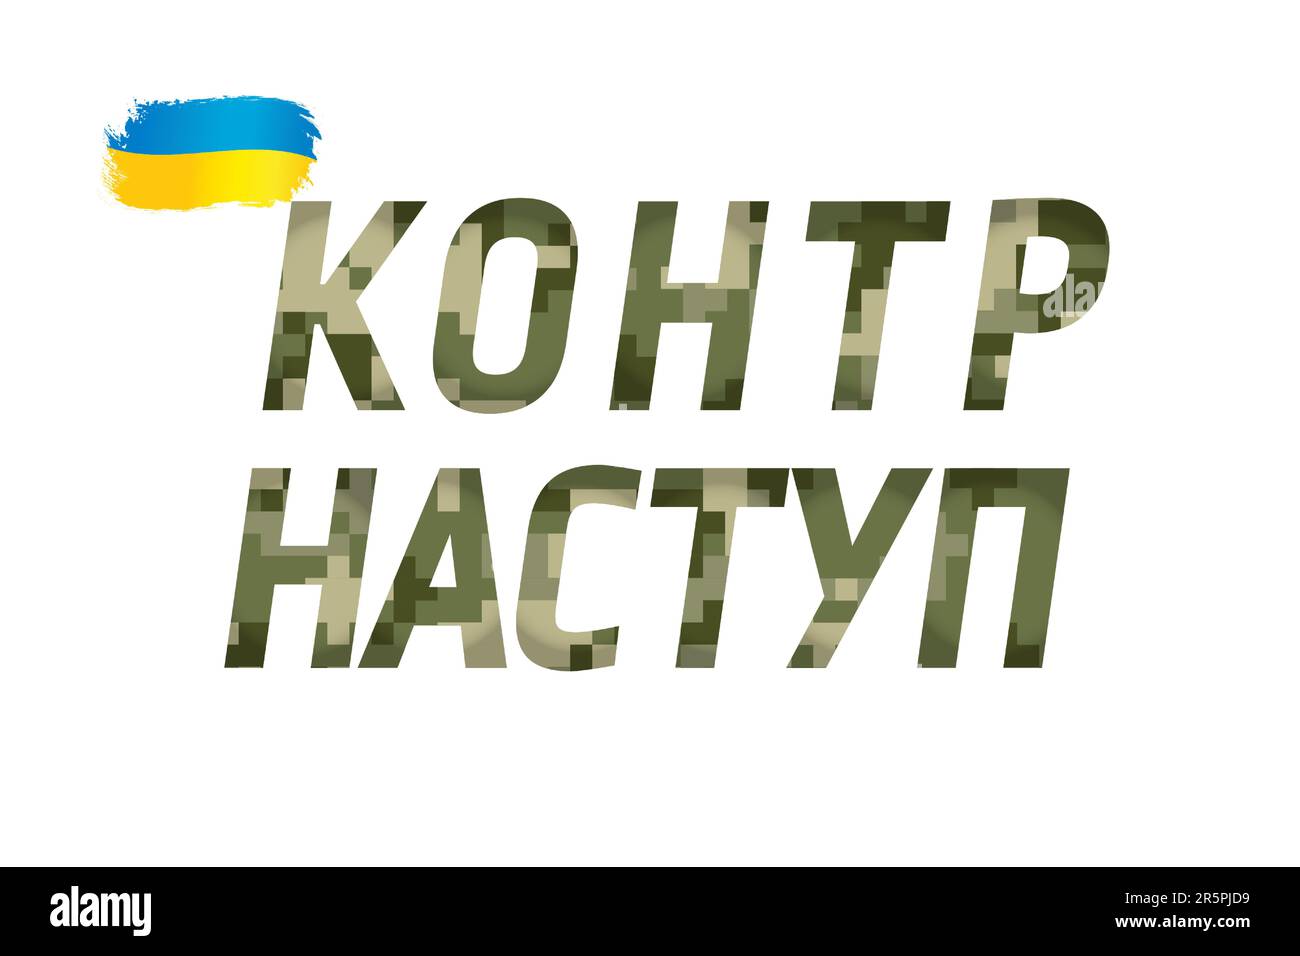 Typographische Gegenoffensive der Streitkräfte mit texturierter Pixeltarnung. Übersetzung aus der Ukraine - Gegenoffensive. Verteidiger der Ukraine Stock Vektor